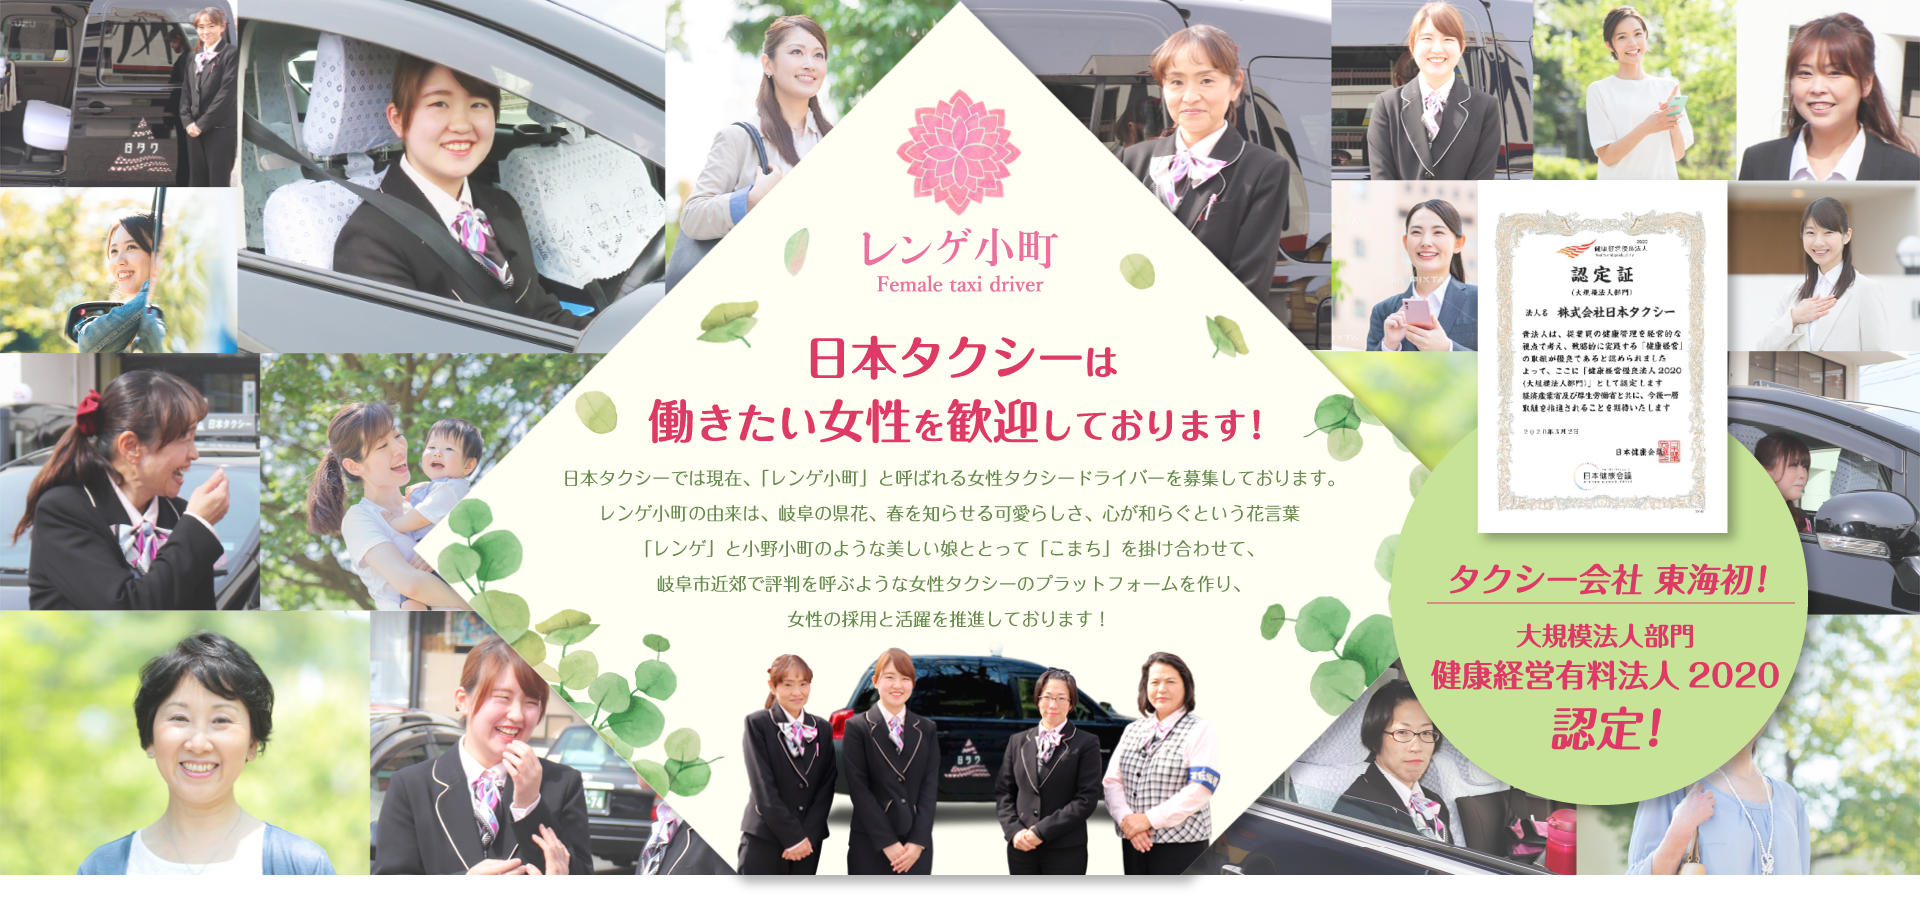 日本タクシーは働きたい女性を歓迎しております！日本タクシーでは現在、「レンゲ小町」と呼ばれる女性タクシードライバーを募集しております。レンゲ小町の由来は、岐阜の県花、春を知らせる可愛らしさ、心が和らぐという花言葉「レンゲ」と小野小町のような美しい娘ととって「こまち」を掛け合わせて、岐阜市近郊で評判を呼ぶような女性タクシーのプラットフォームを作り、女性の採用と活躍を推進しております！